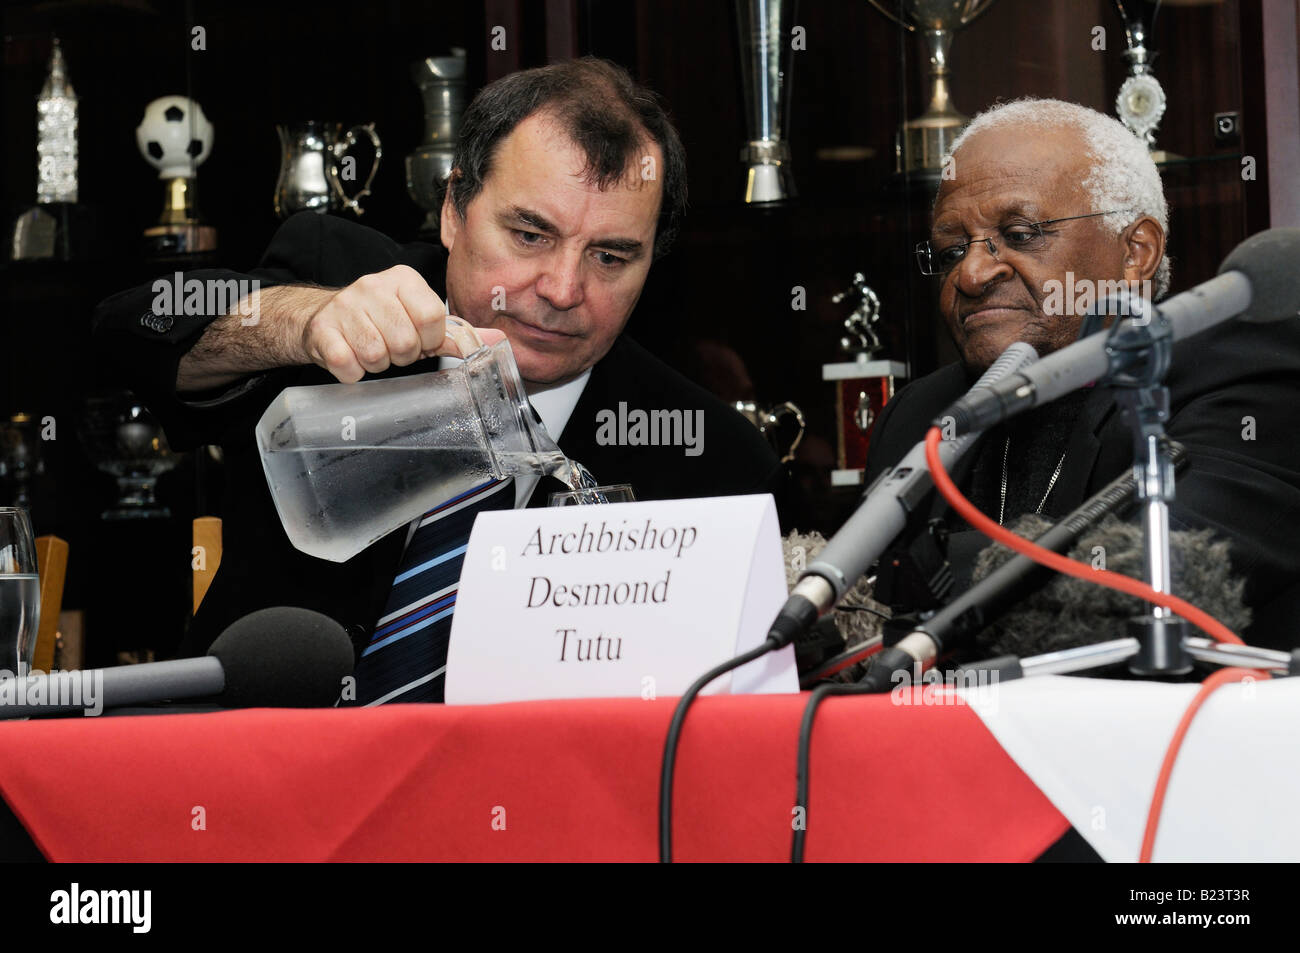 Don mullan et l'archevêque Desmond Tutu Banque D'Images